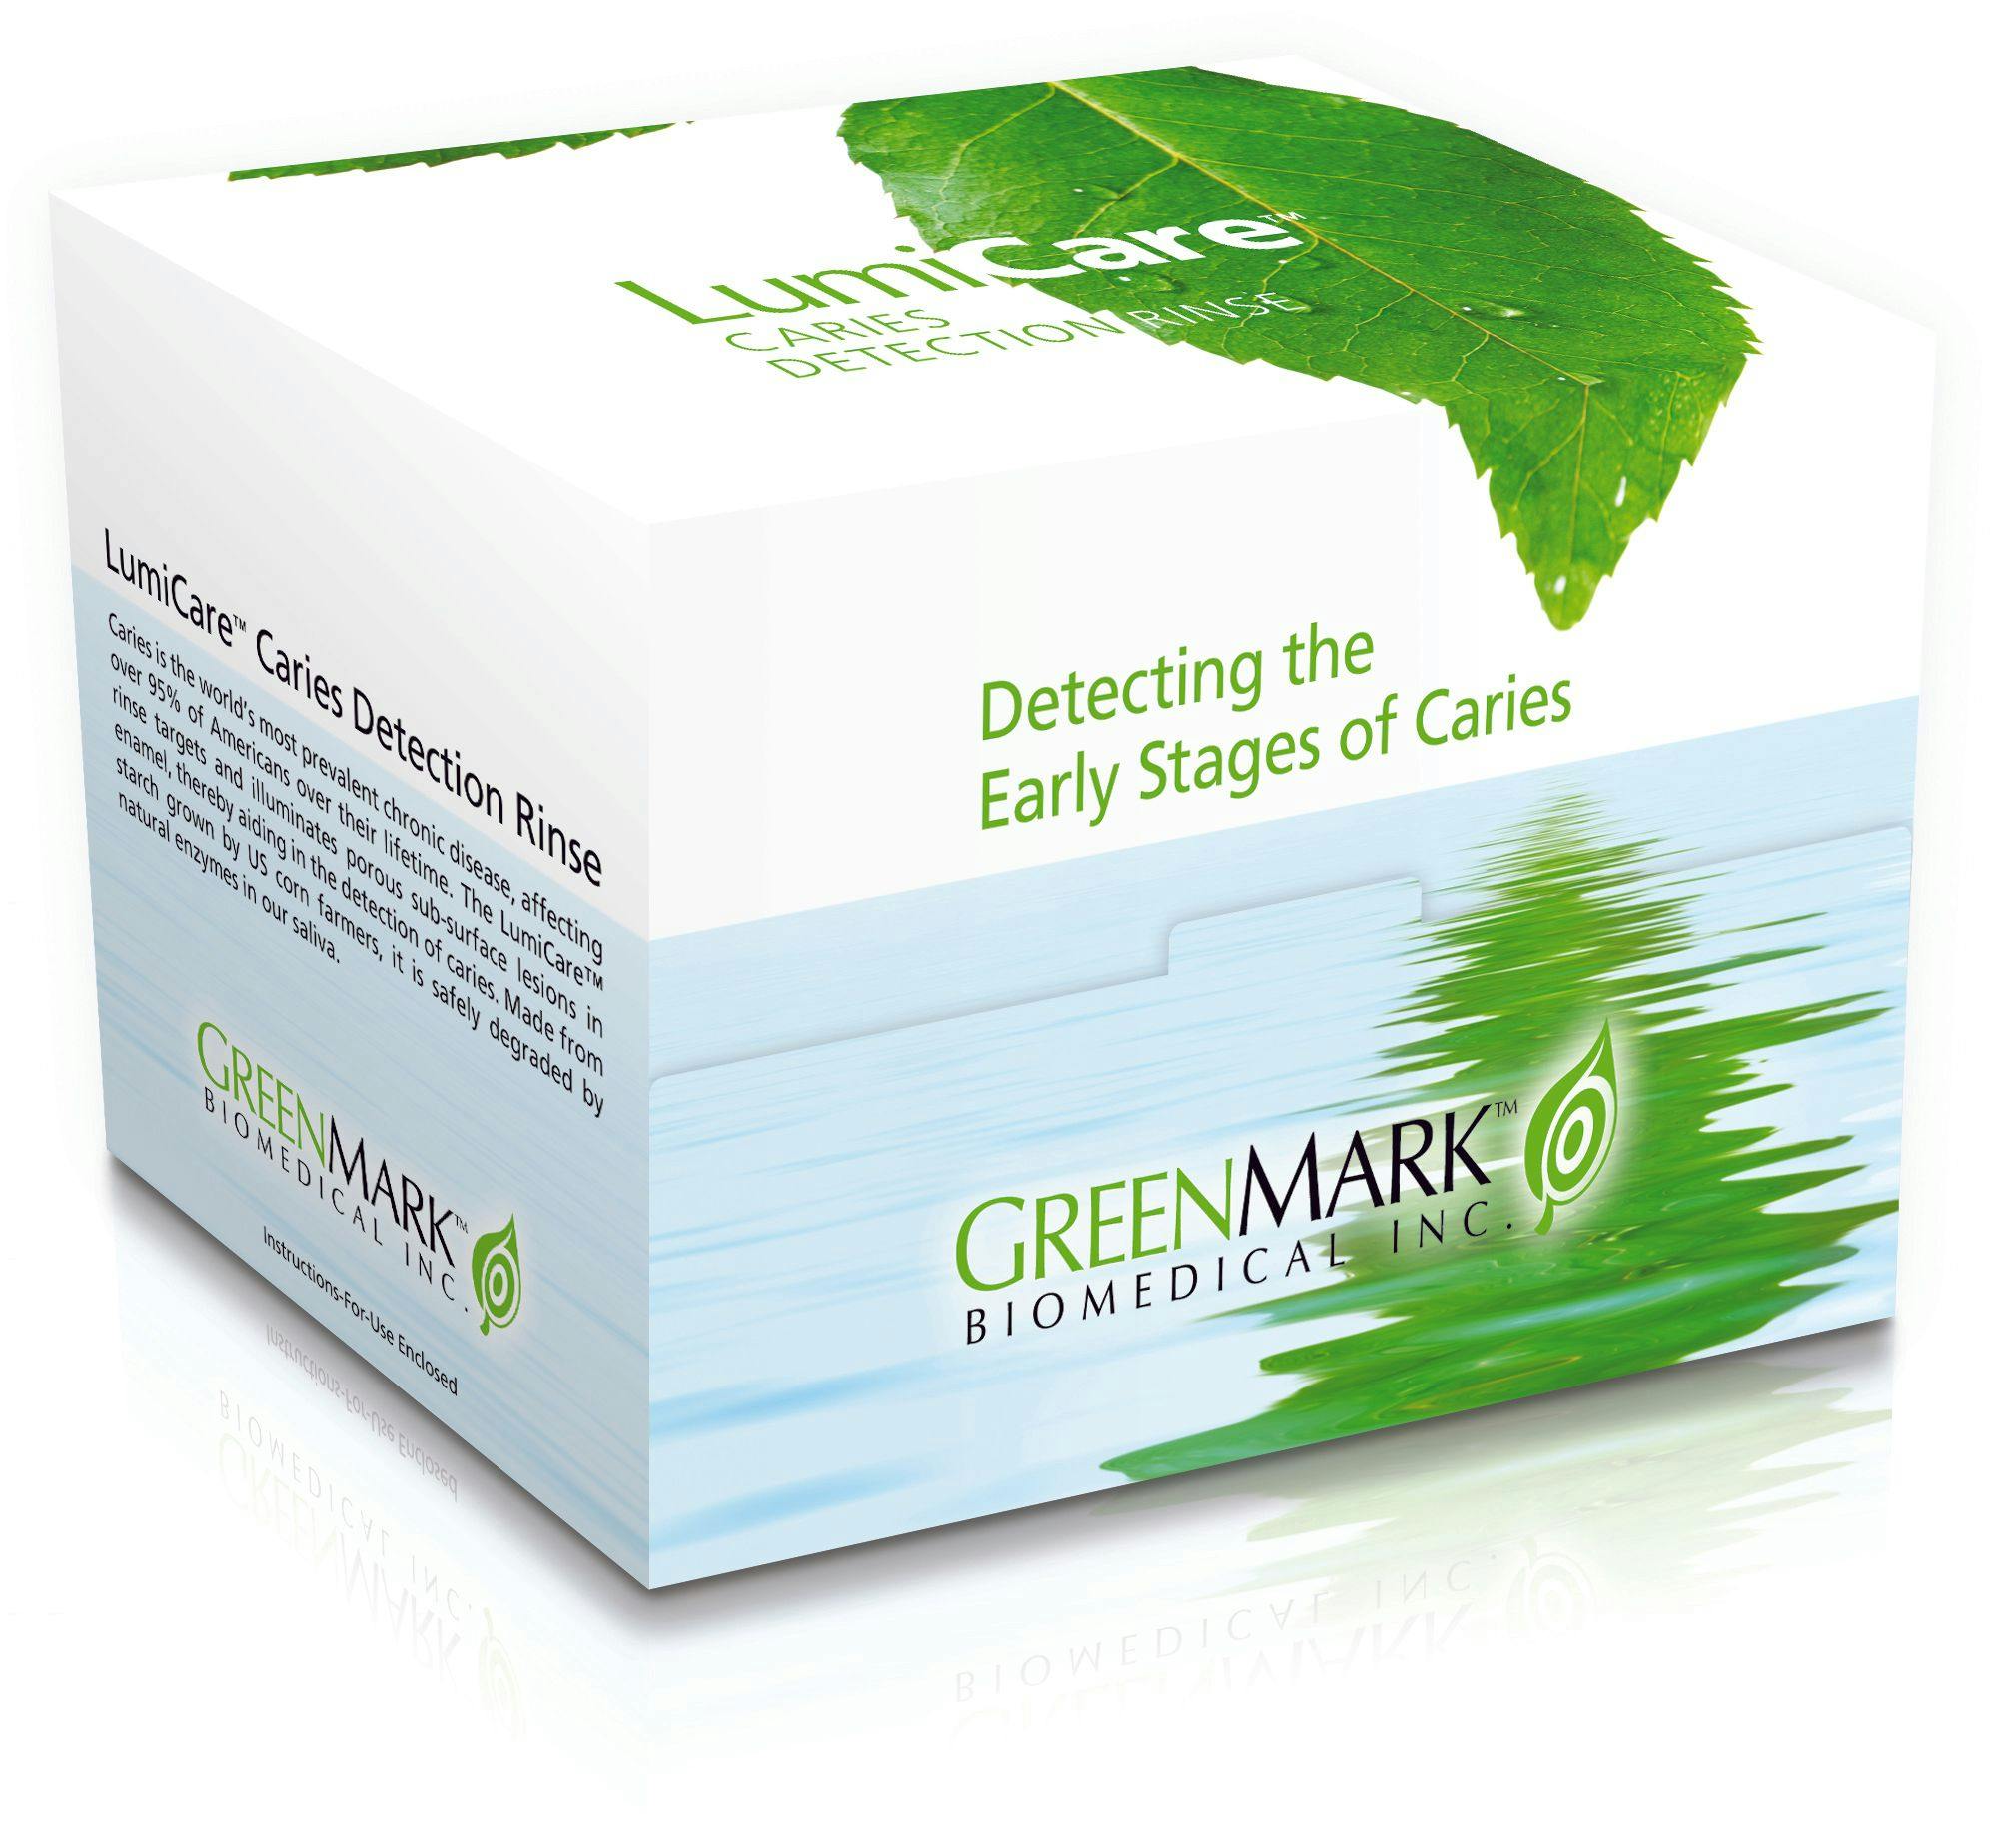 GreenMark Biomedical's LumiCare Rinse